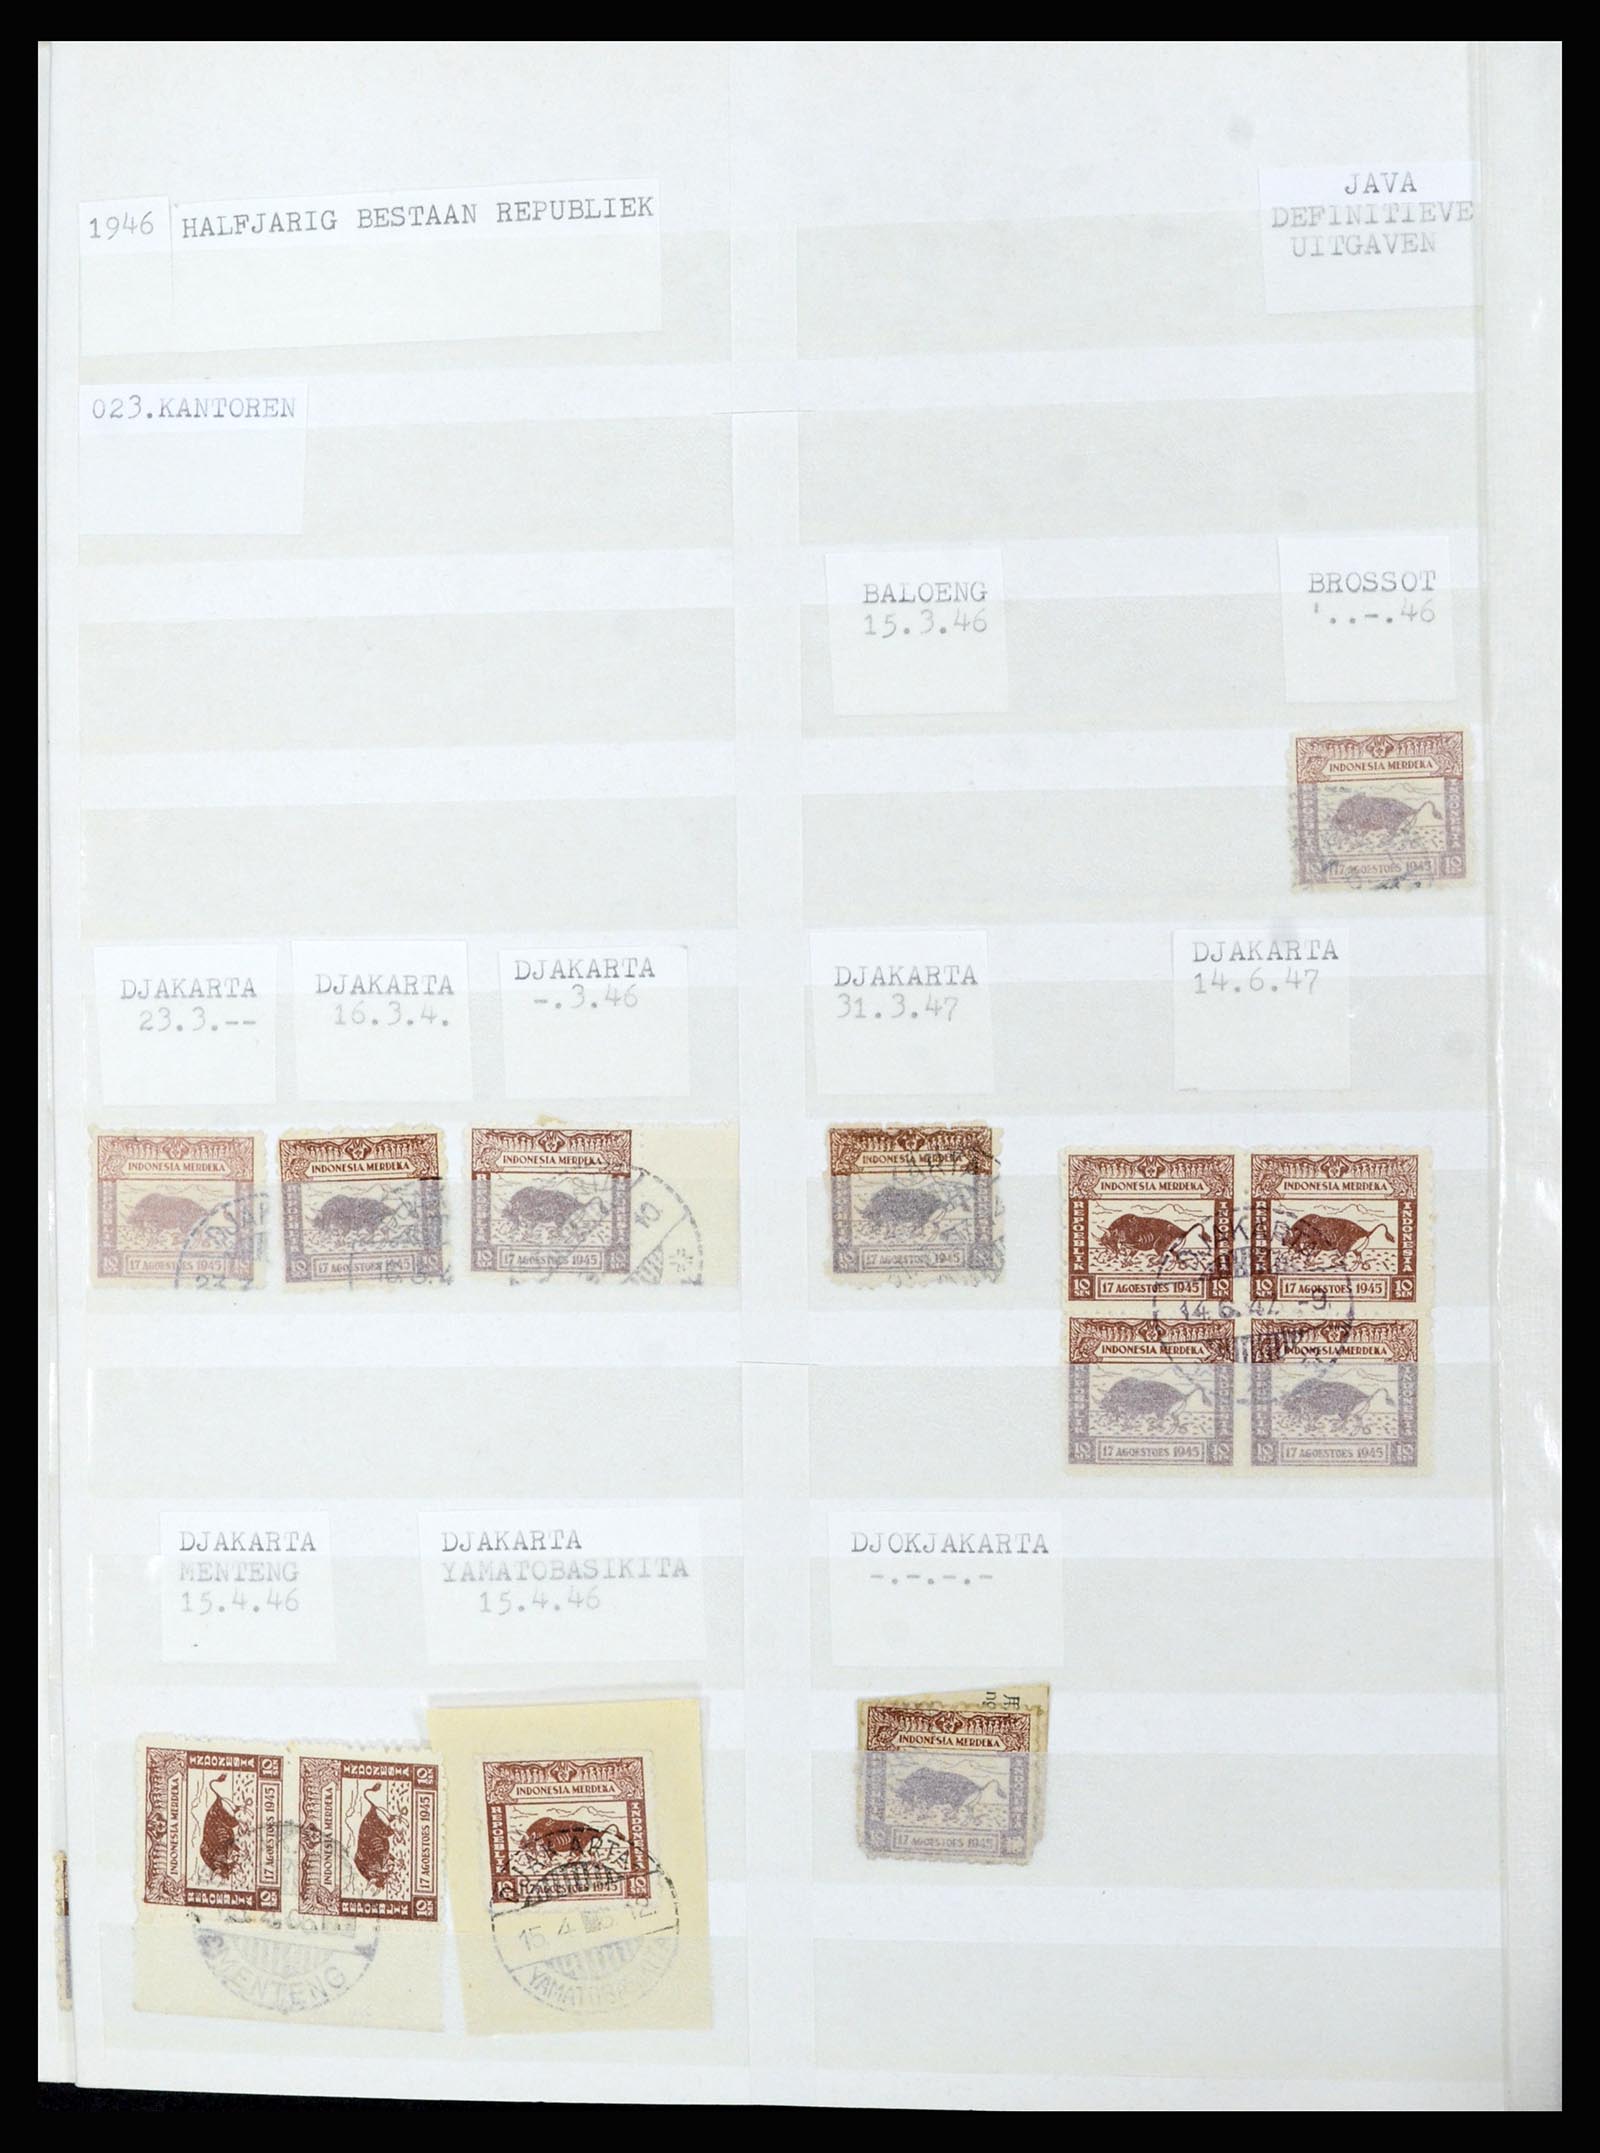 36742 079 - Stamp collection 36742 Dutch Indies interim period 1945-1949.